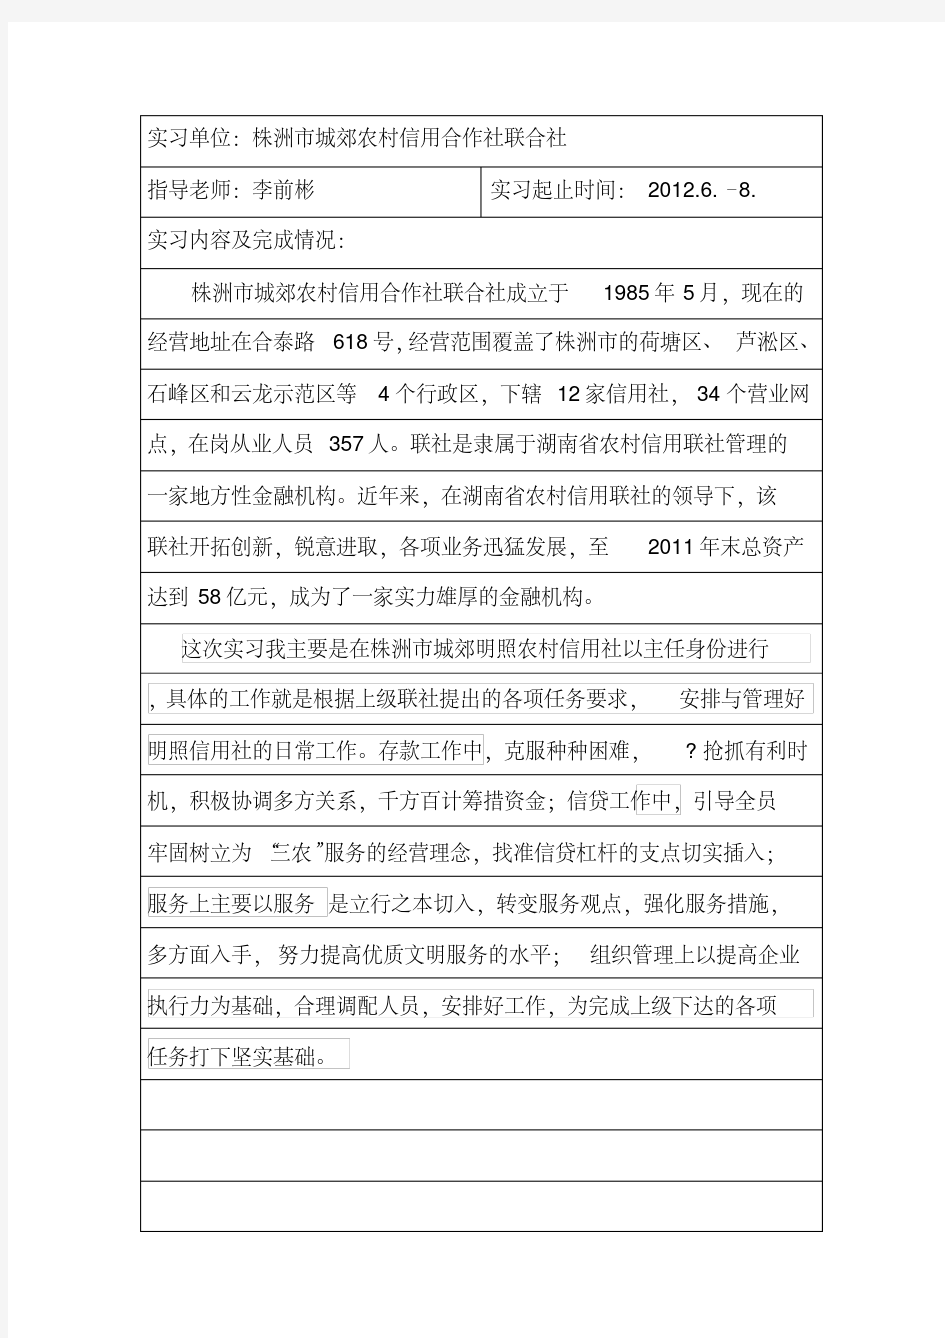 武汉理工大学工商管理毕业实习报告(肖大勇)